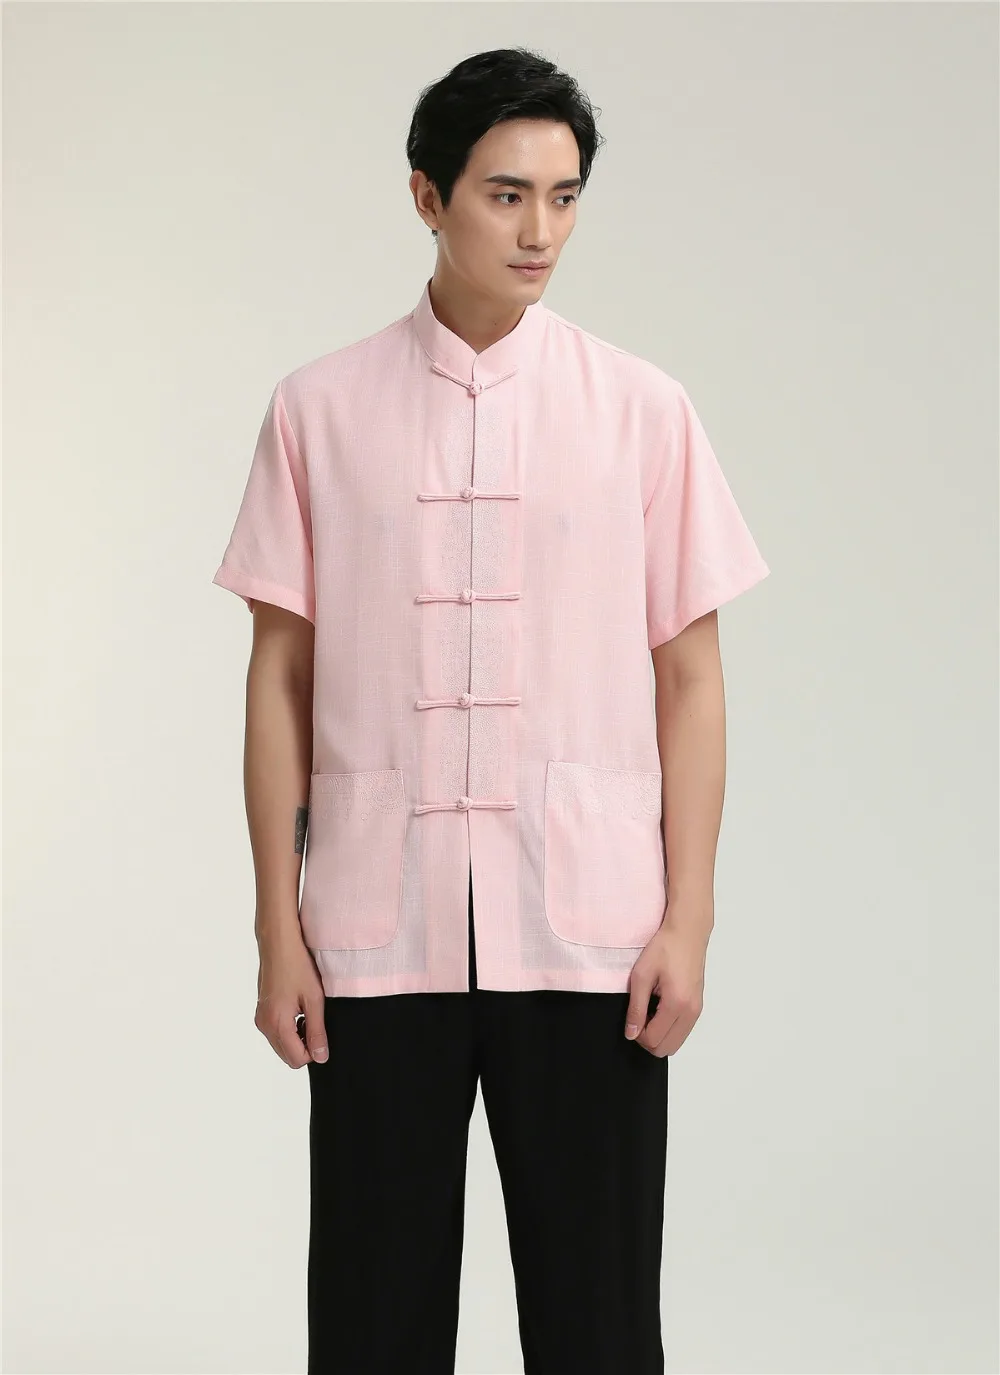 Шанхай история короткий рукав Китайская традиционная Костюмы кунг-фу Рубашка для парня китайского Топ для человека свободную рубашку